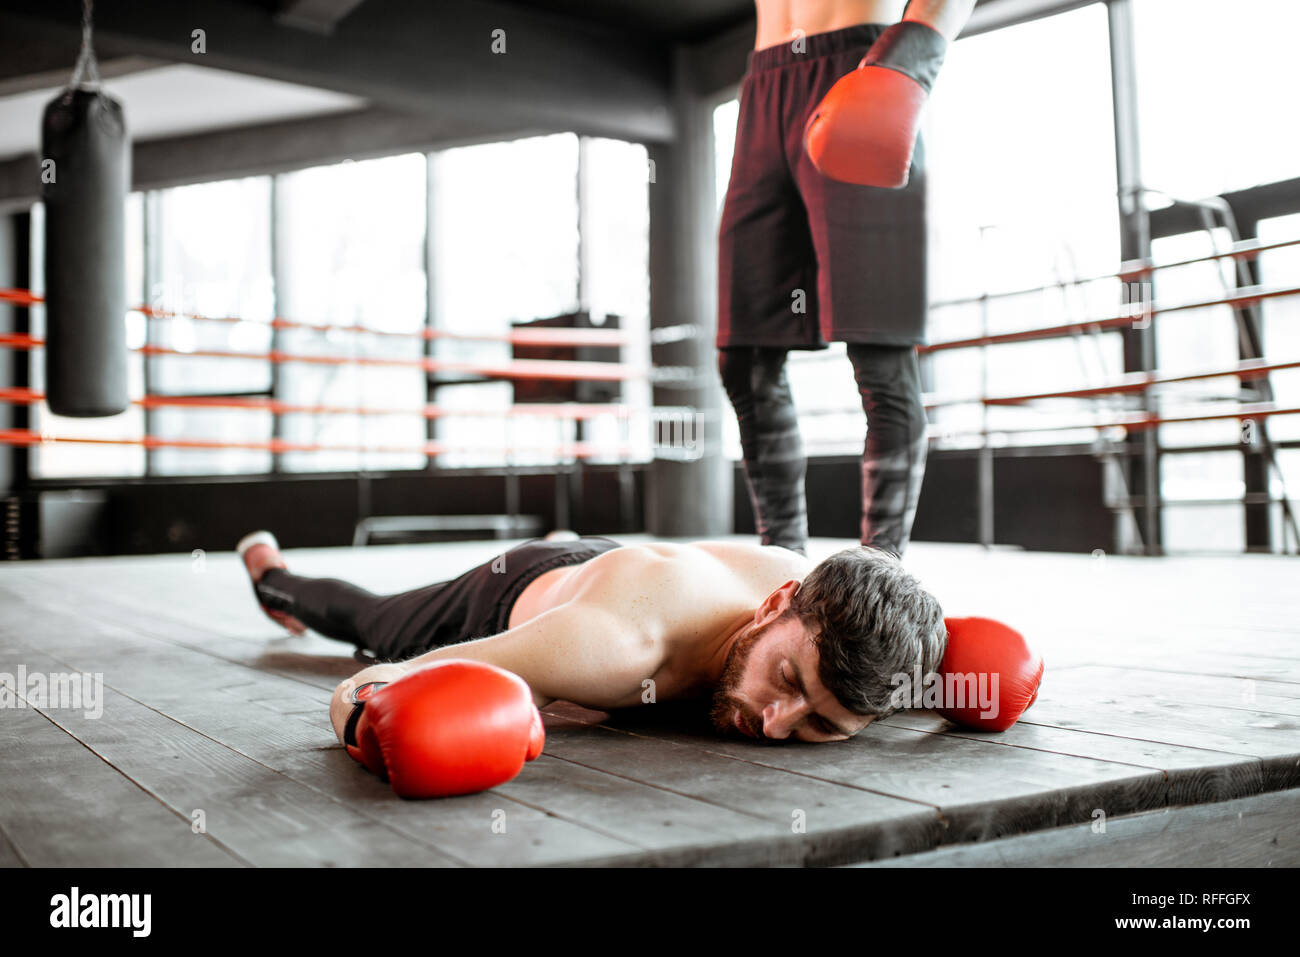 Geschlagenen Boxer auf dem Boden während eines Boxing Schlacht, mit einem  Zuschlag auf den Boxring Stockfotografie - Alamy